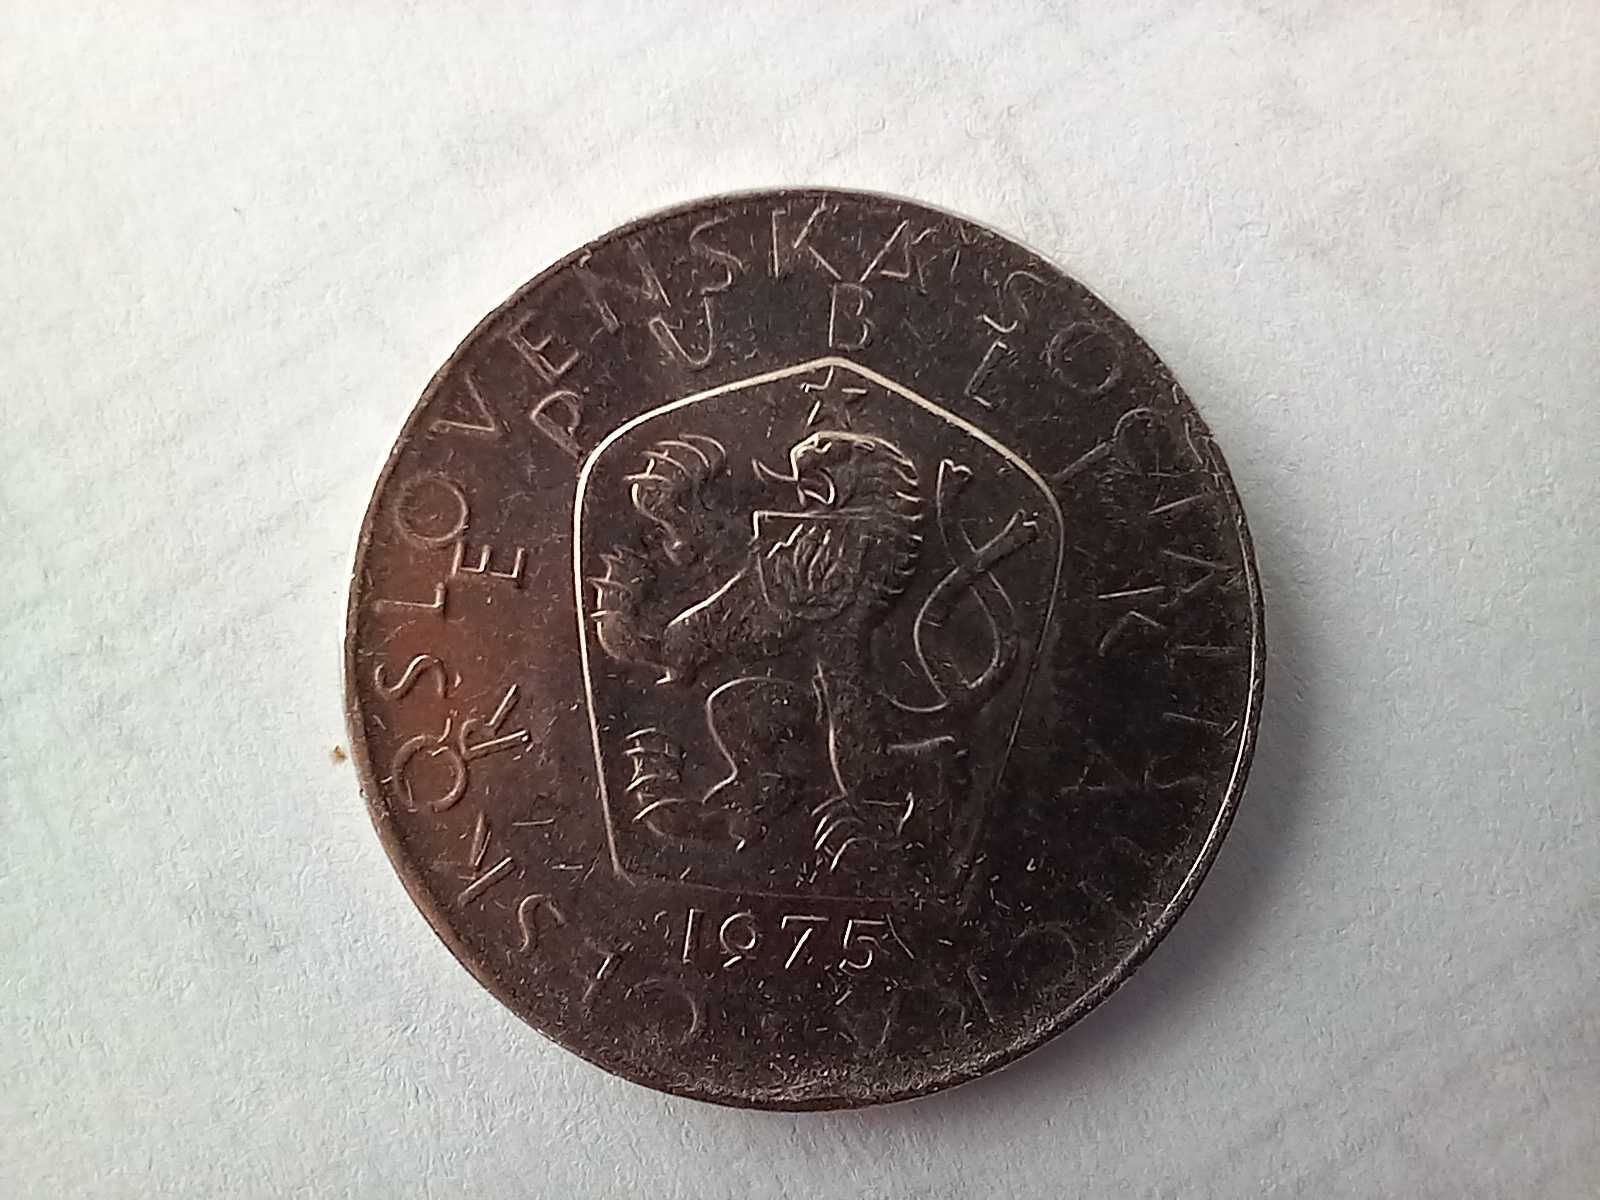 Moneta Czechosłowacja - 5 koron 1975 /4/